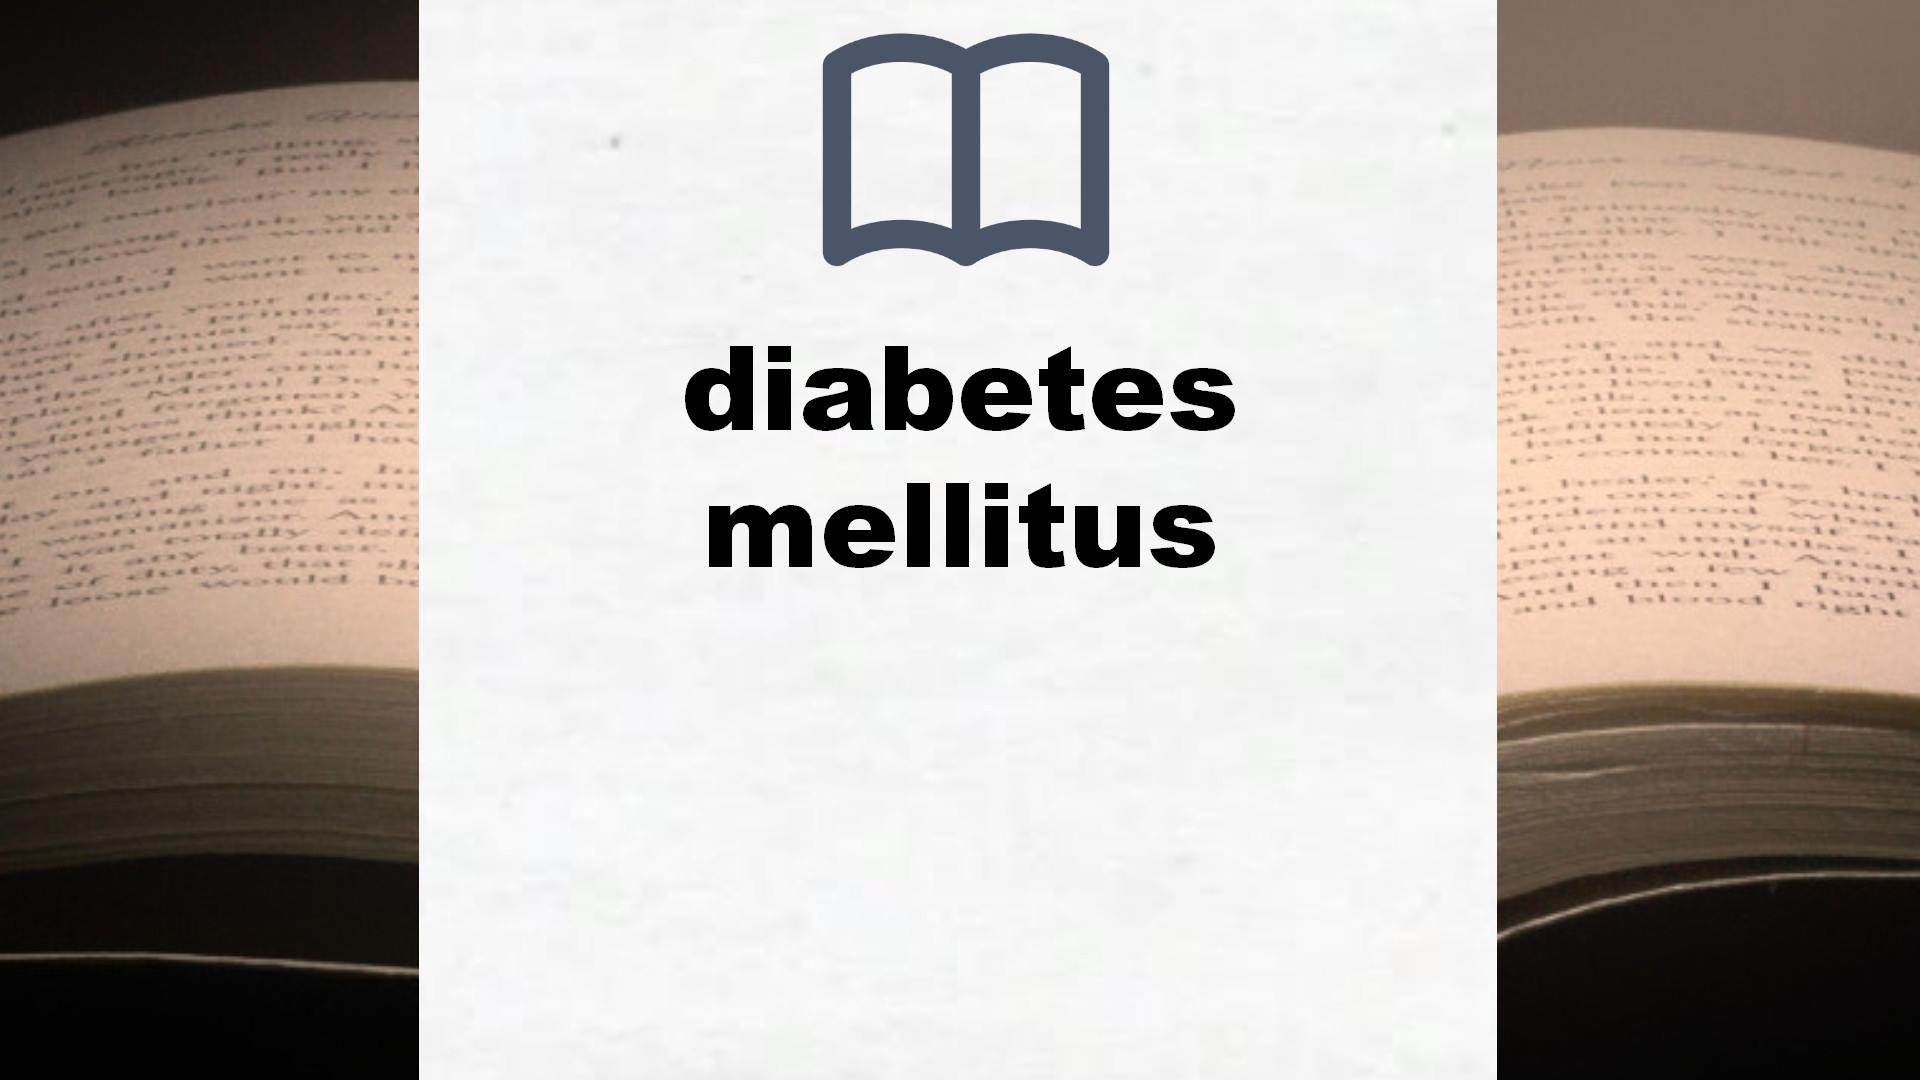 Libros sobre diabetes mellitus